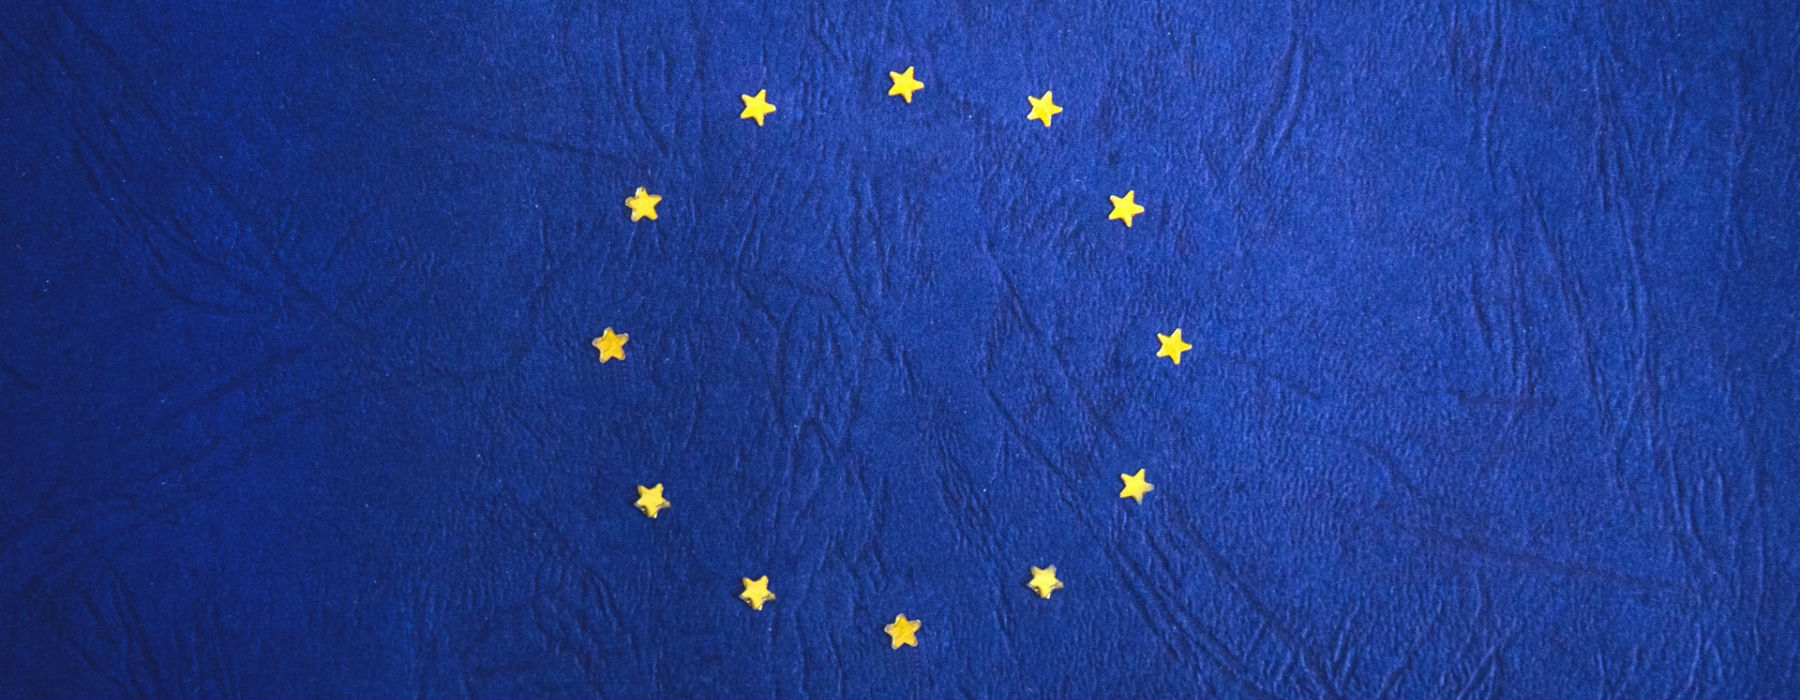 Europa_stelle